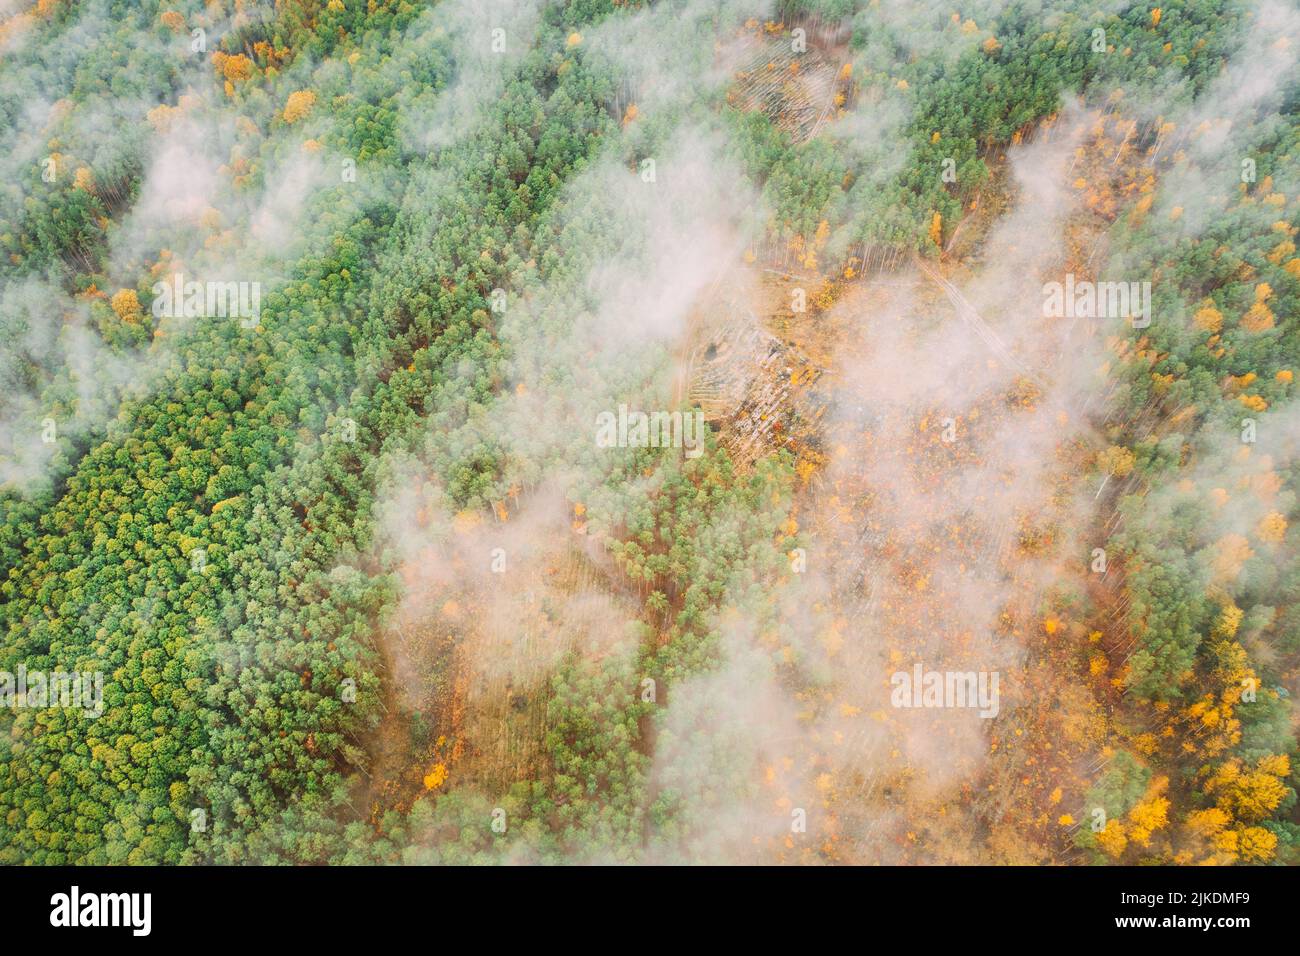 Vista aérea de una zona maderera que atraviesa el bosque. Fuego de Bush y humo en zona de deforestación. El fuego abierto destruye el césped. Naturaleza en peligro Foto de stock